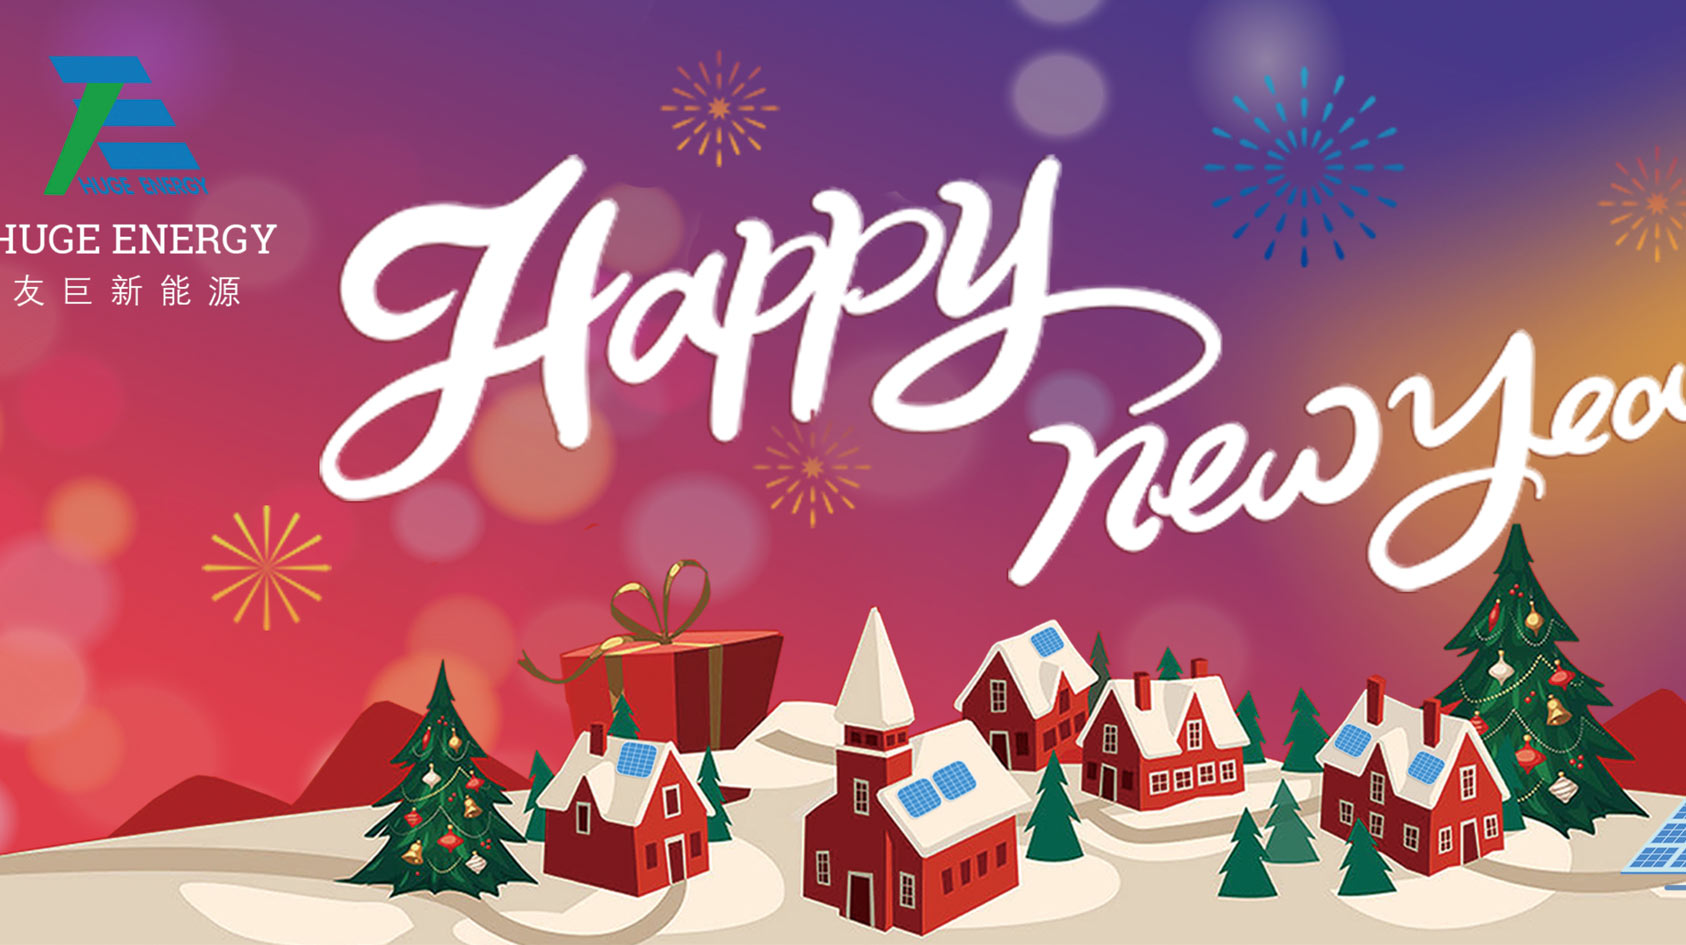 في بداية العام الجديد ، تتمنى لكم شركة Huge Energy سنة جديدة سعيدة!